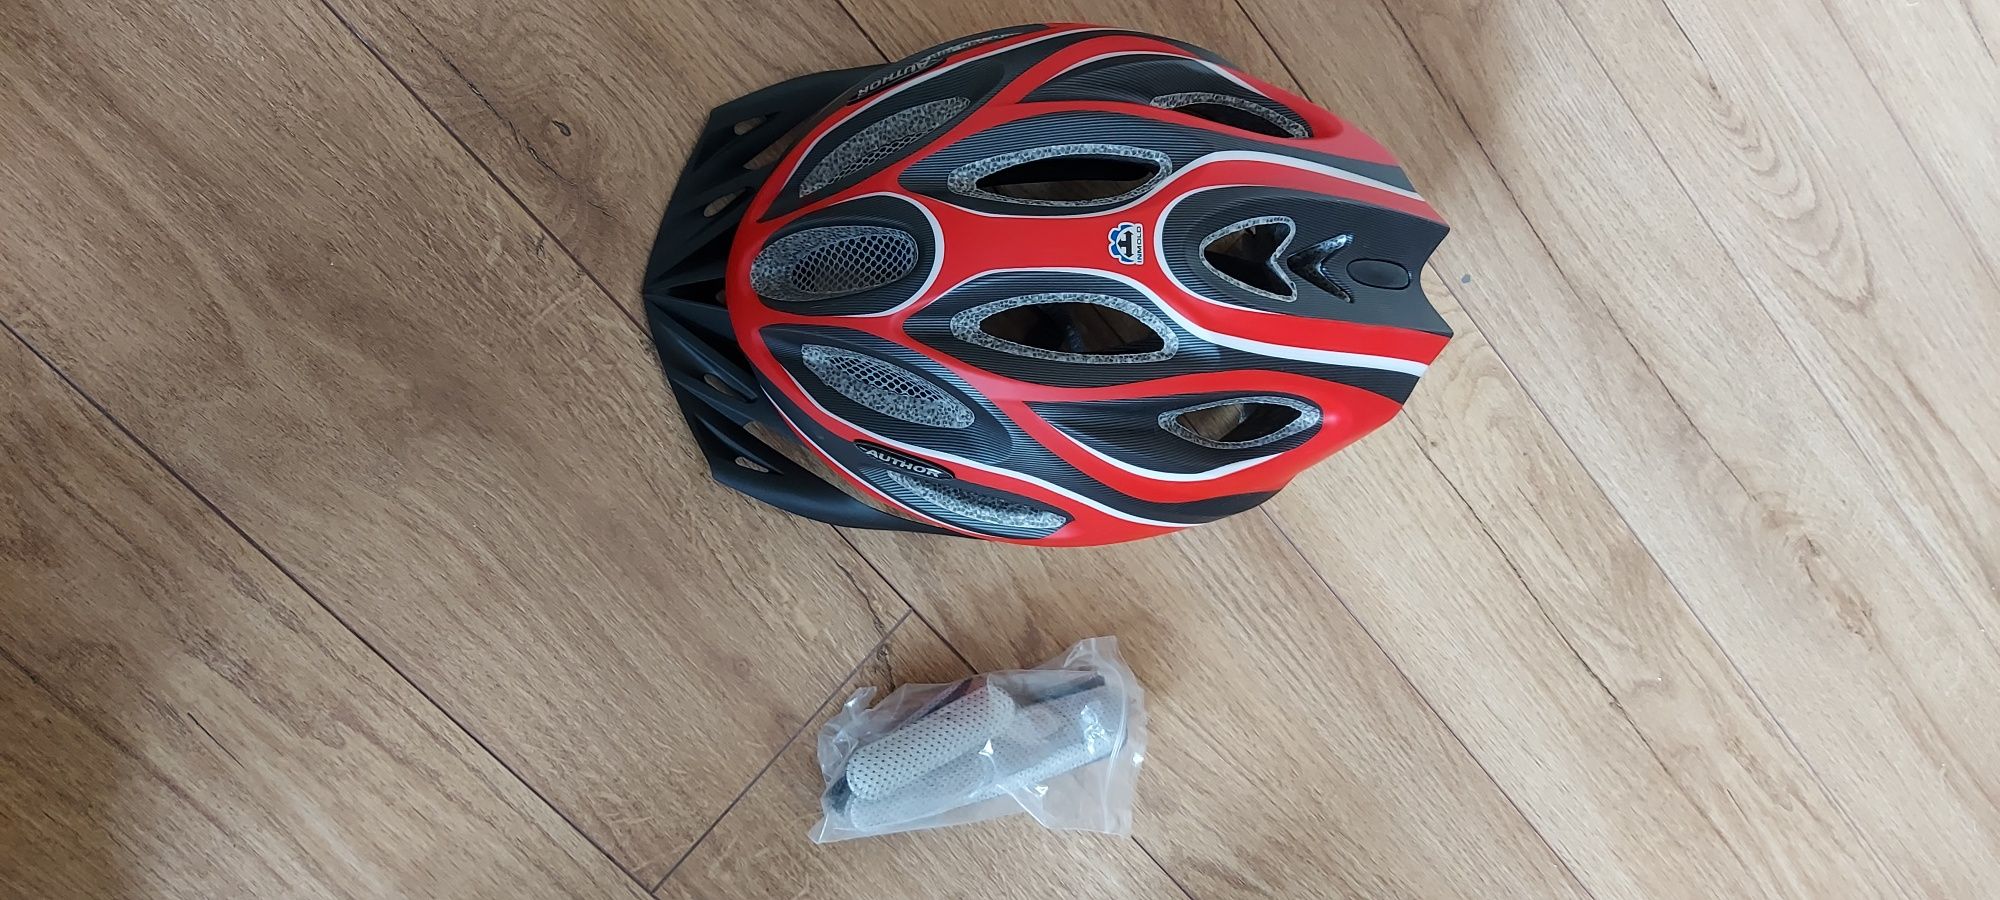 Продам шлем для головы велосипед